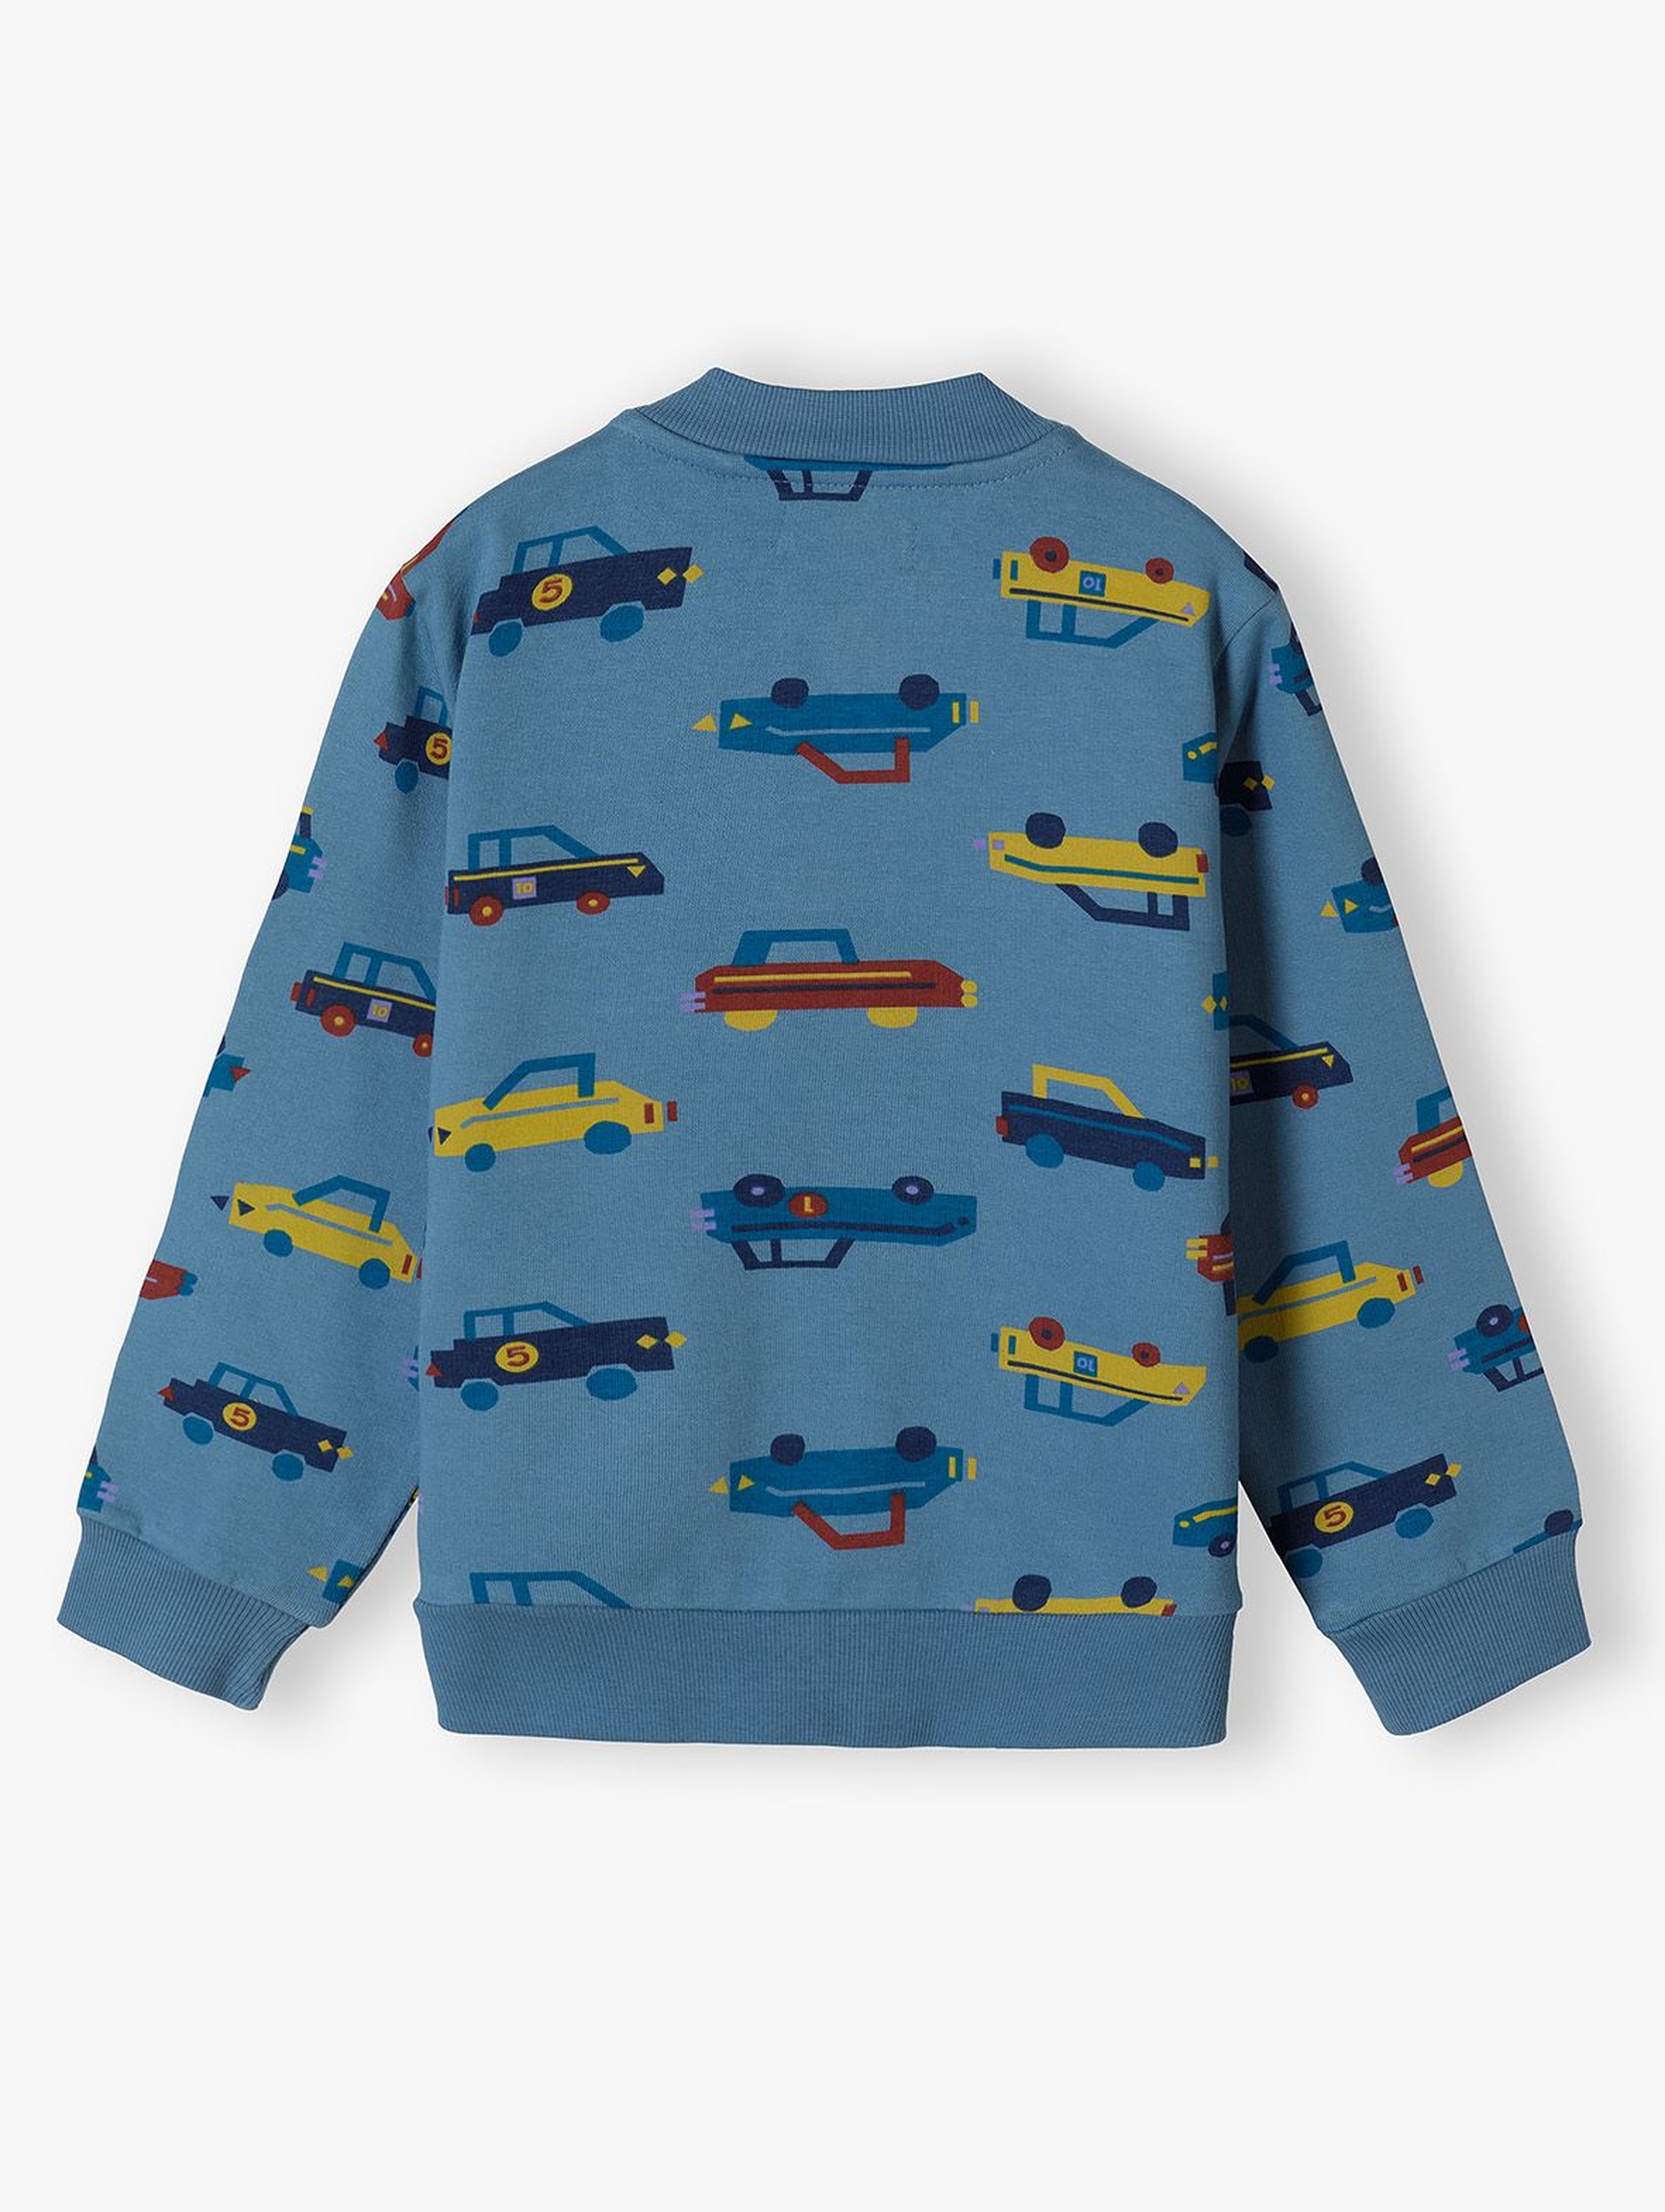 Bluza chłopięca bawełniana niebieska z autami